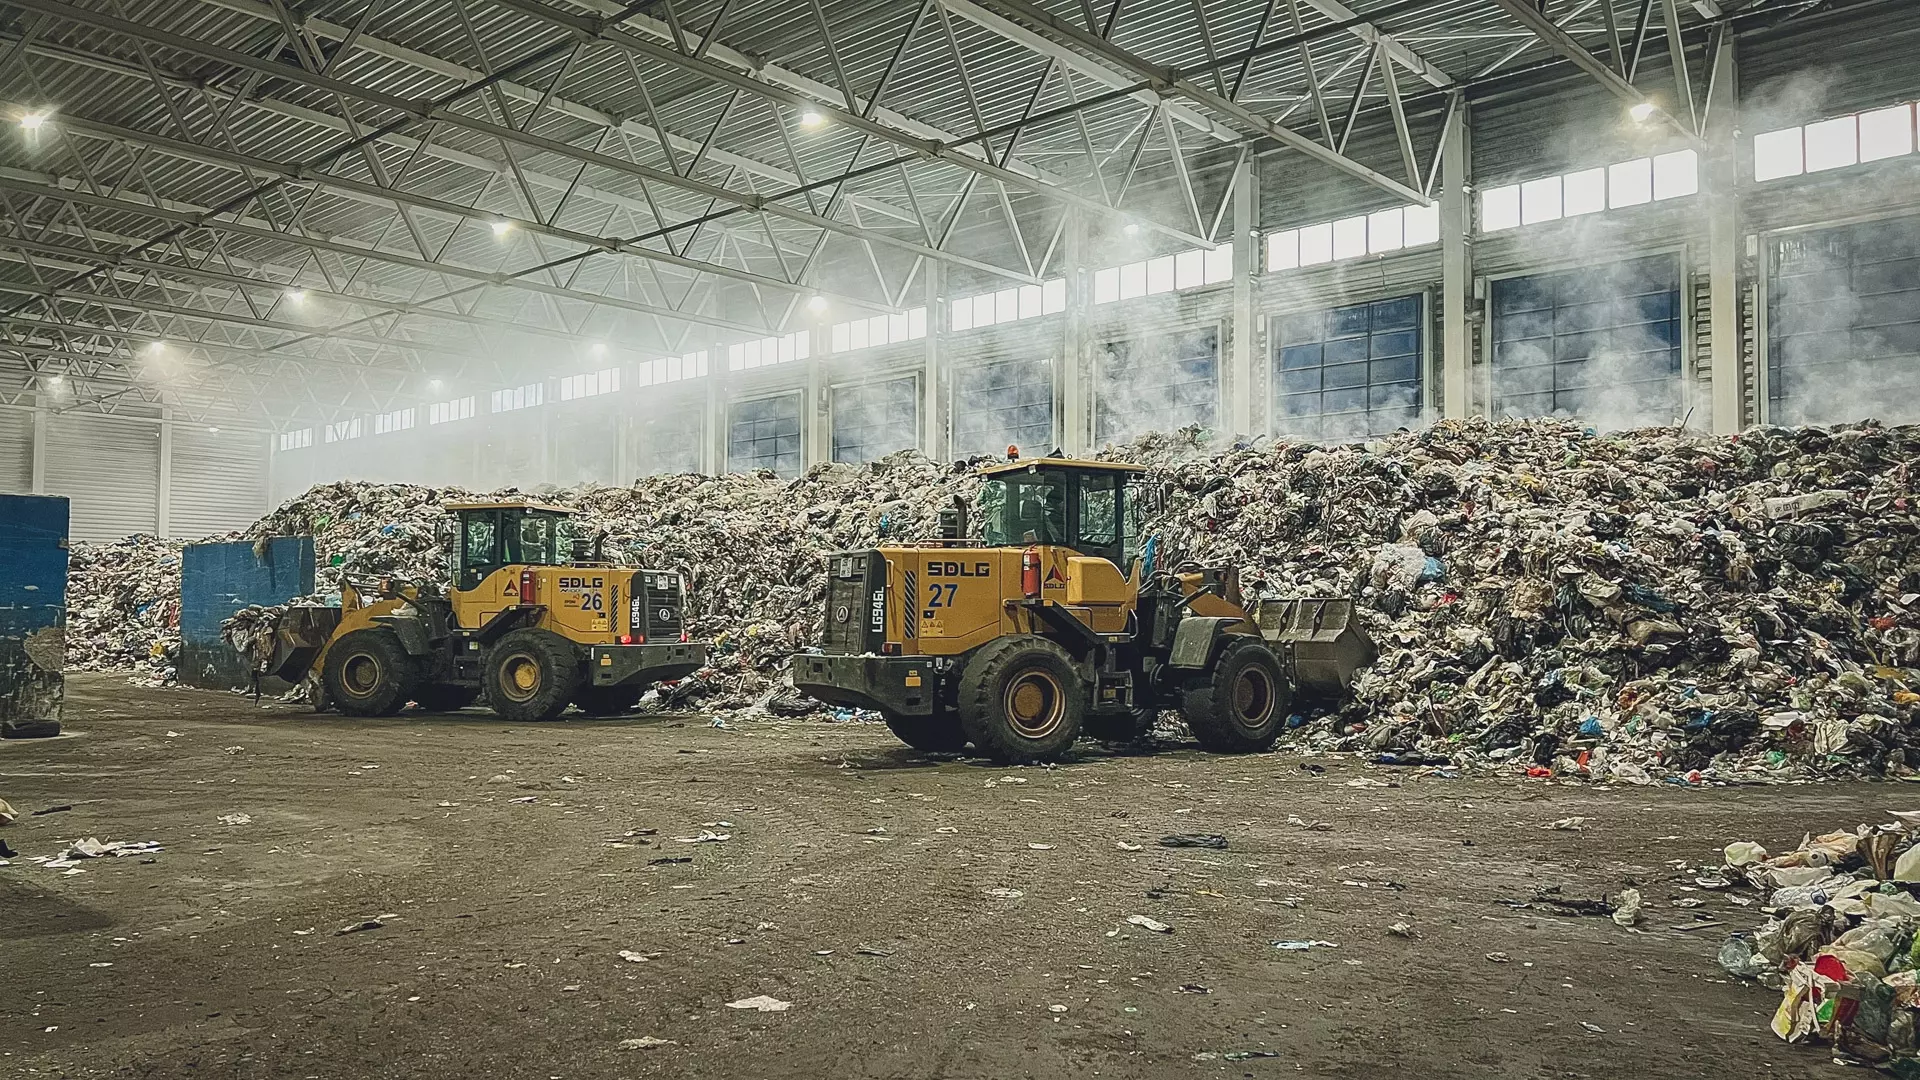 Построить современные мусоросортировочные заводы под Новосибирском пытаются много лет